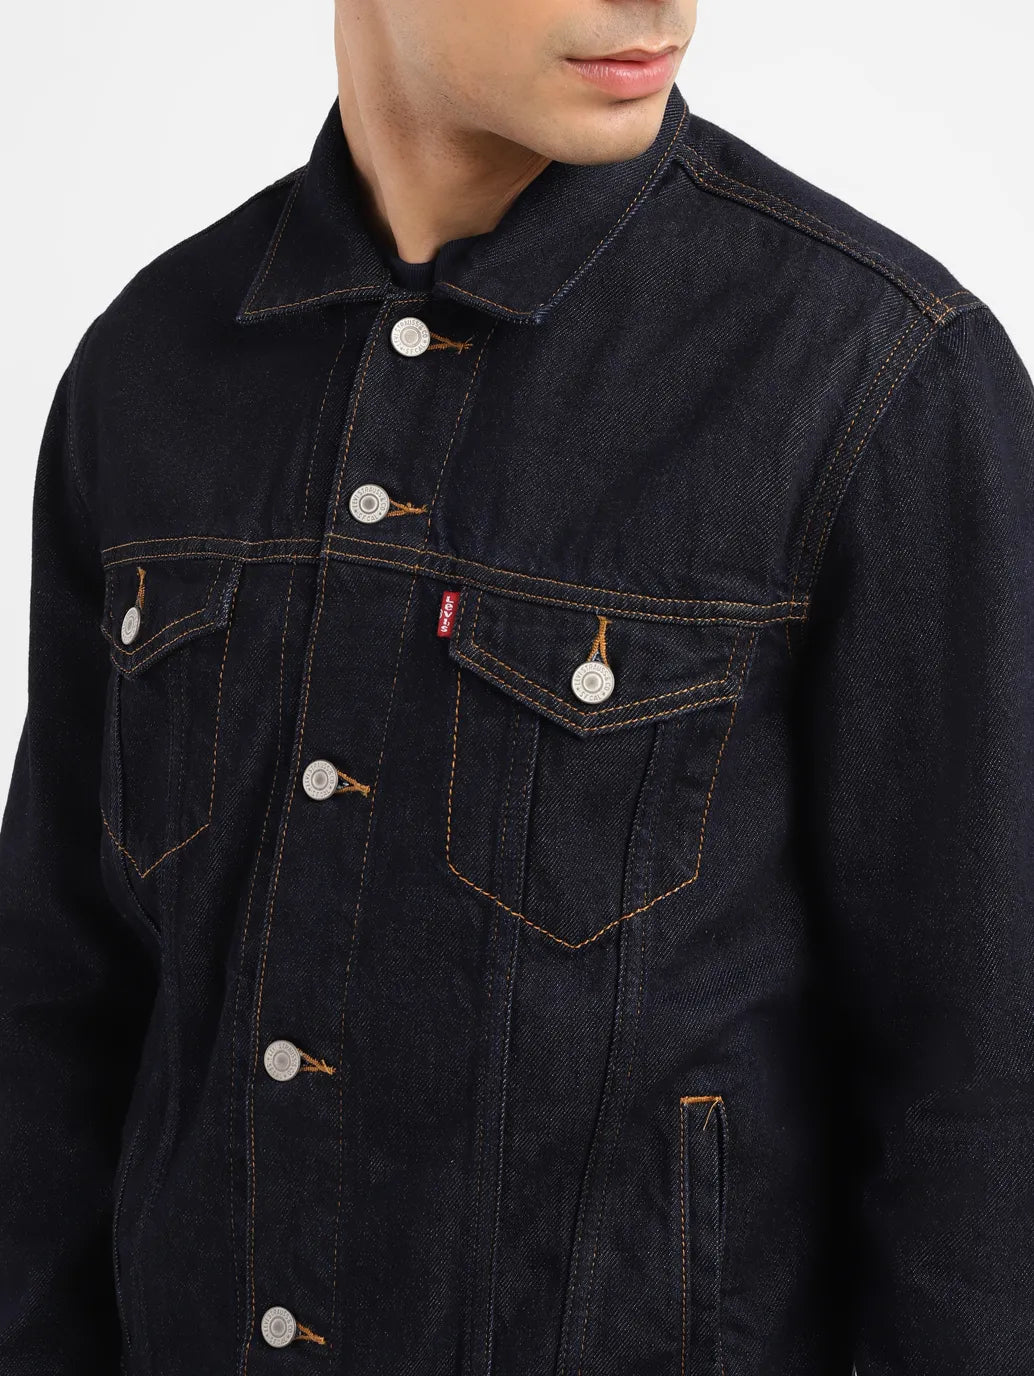 Men's Solid Indigo Spread Collar Jacket